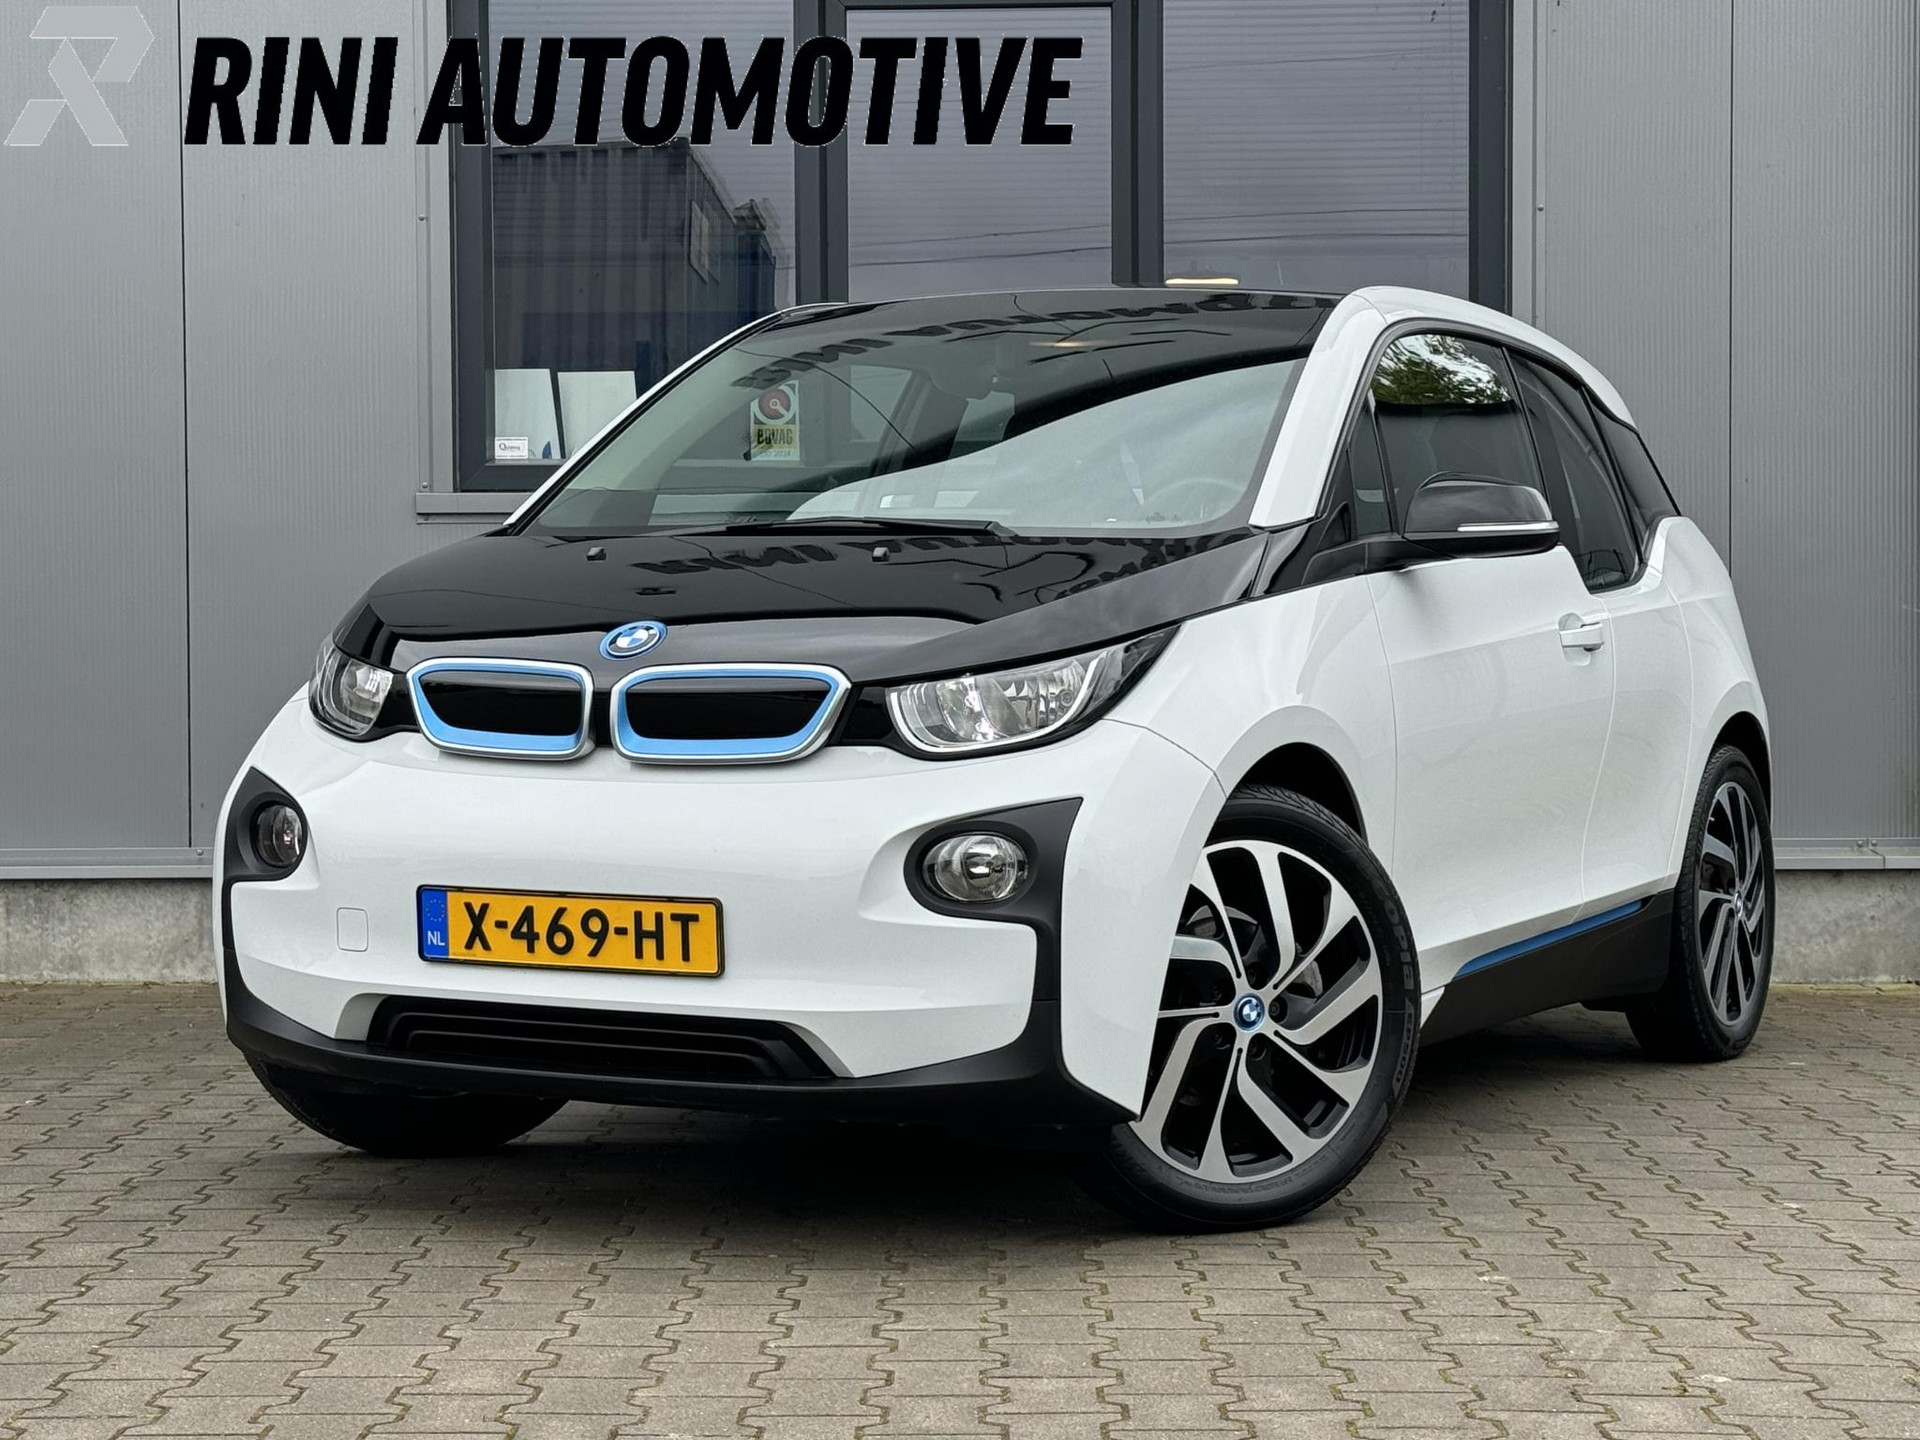 BMW i3 Comfort 22 kWh €12450,- na subsidie - 170 pk - Groot Navi - goed onderhouden